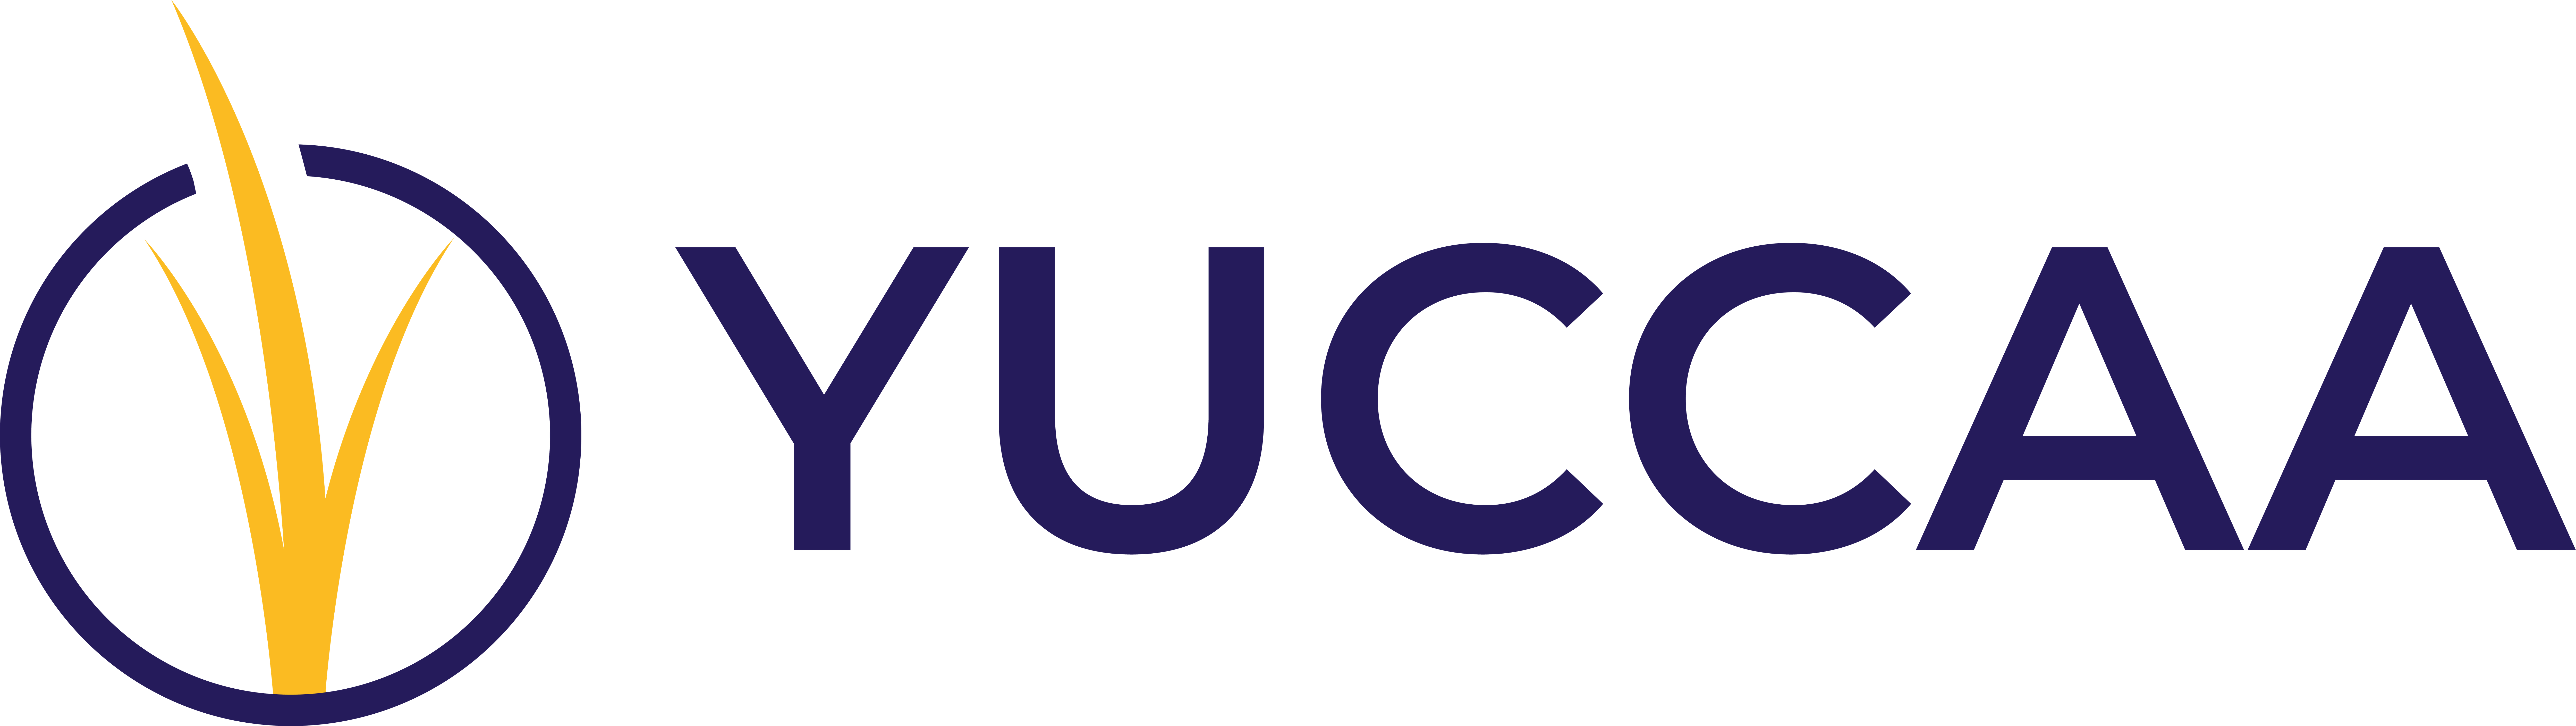 Yuccaa